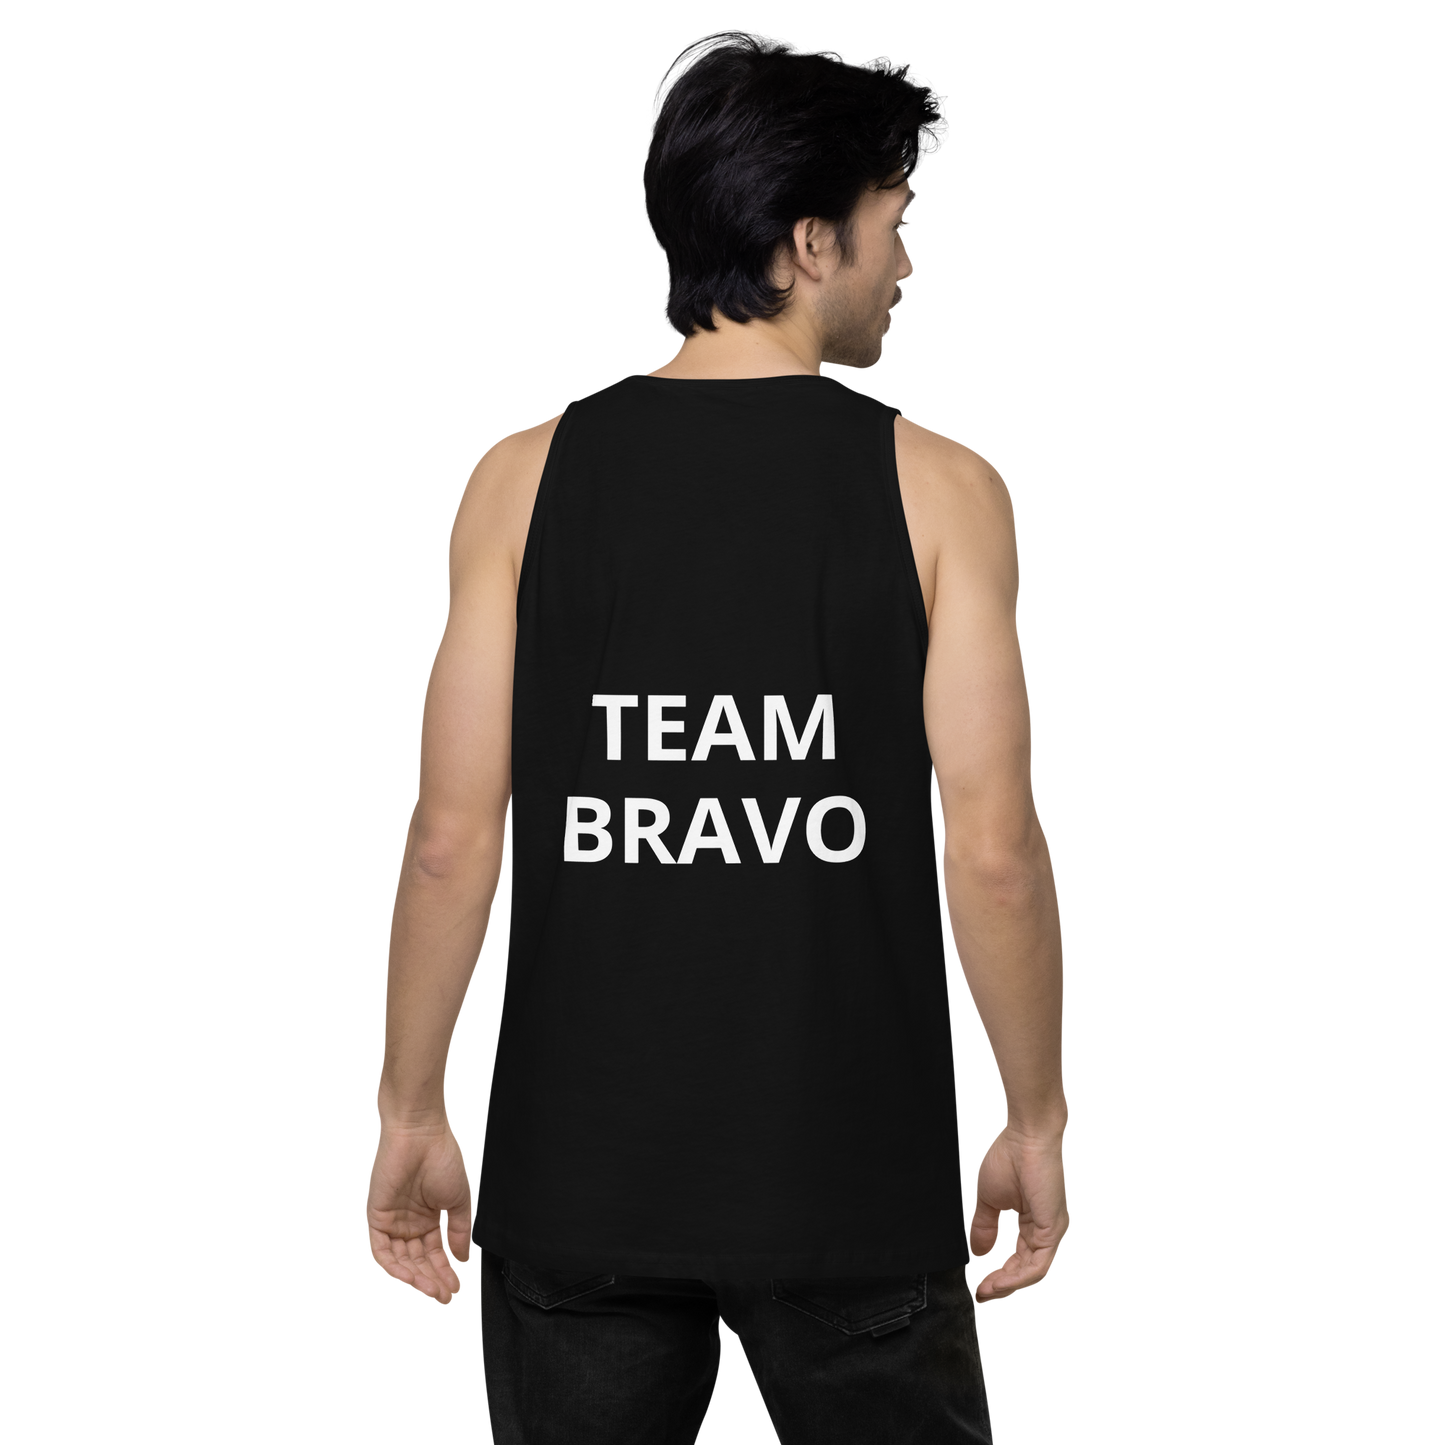 Team Bravo Men's Premium Tank Top